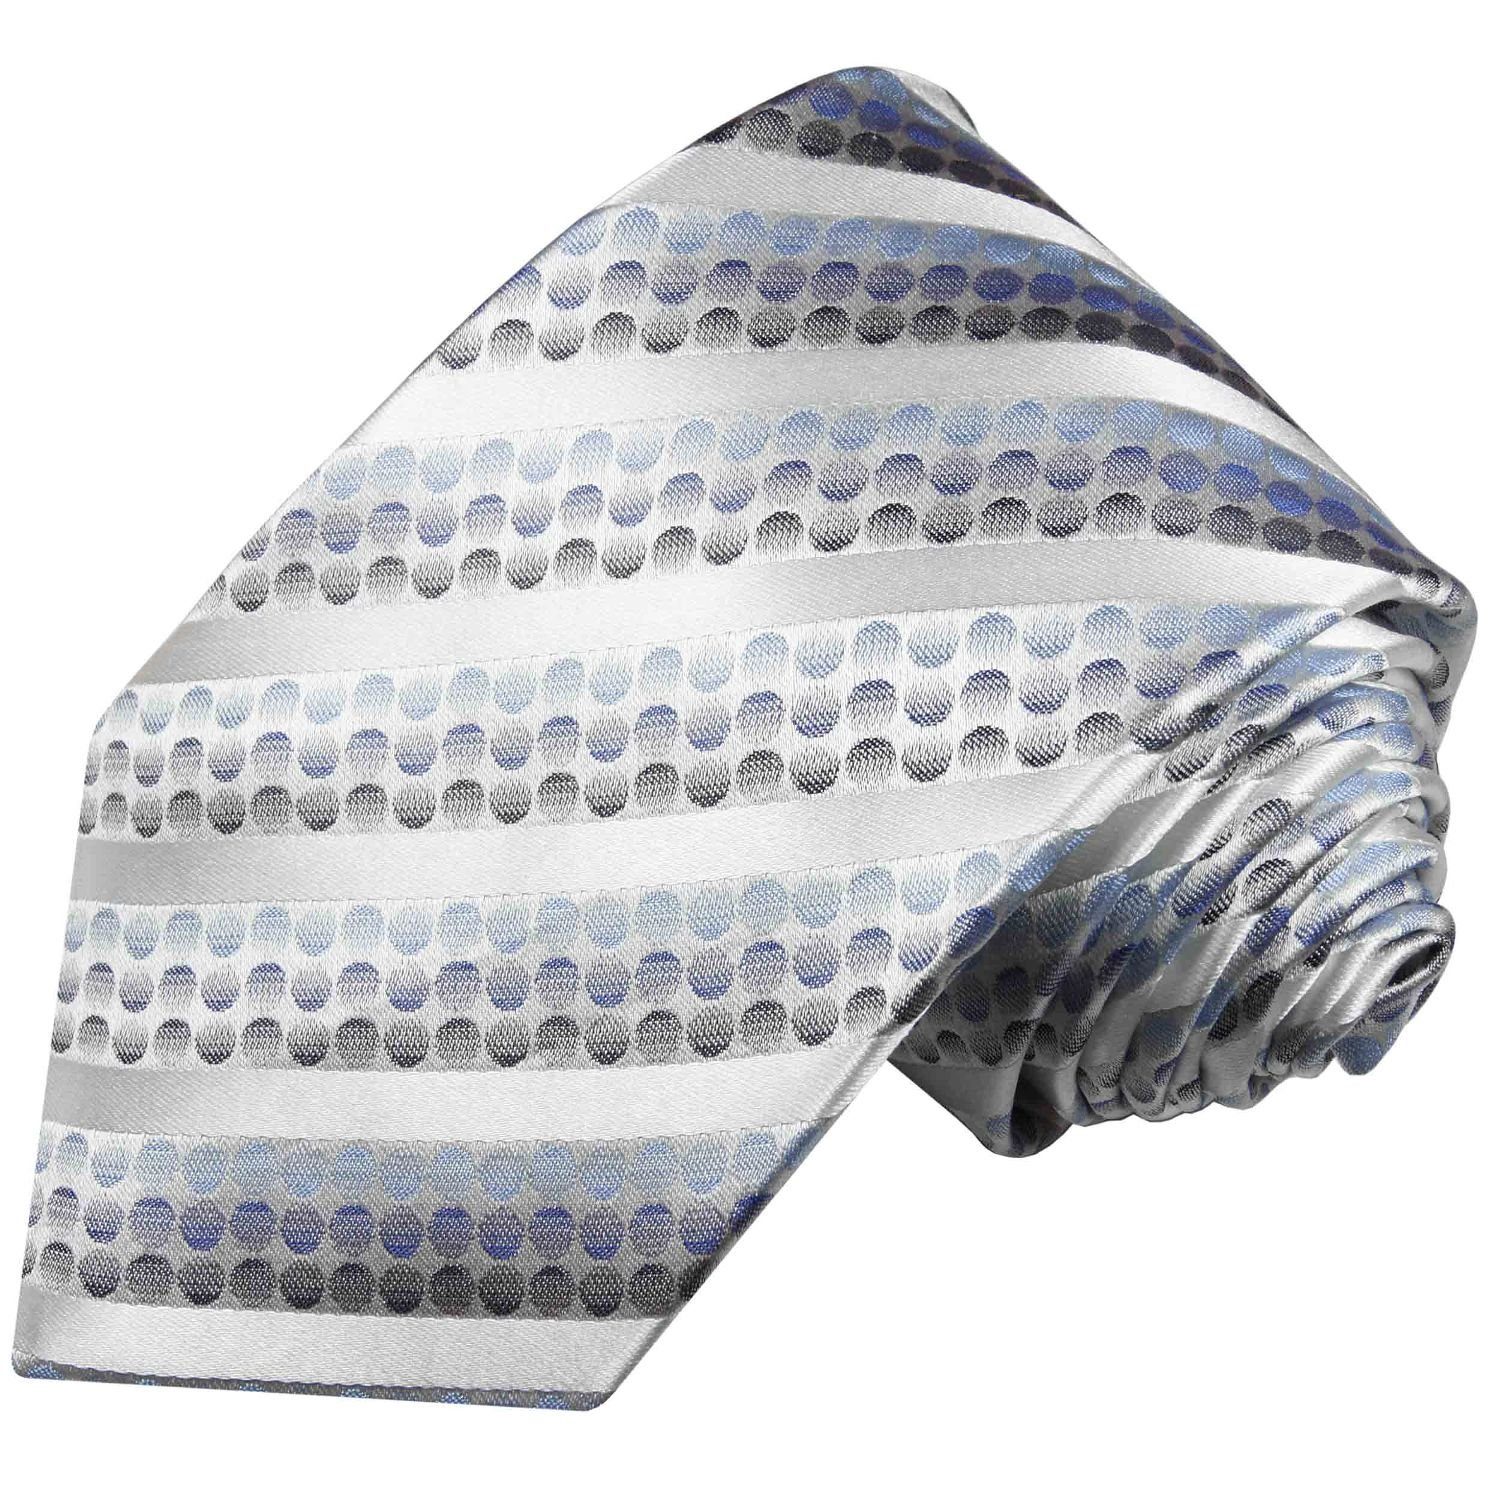 Paul Malone Krawatte Designer Seidenkrawatte Herren Schlips Streifen gepunktet 100% Seide Schmal (6cm), blau silber 602